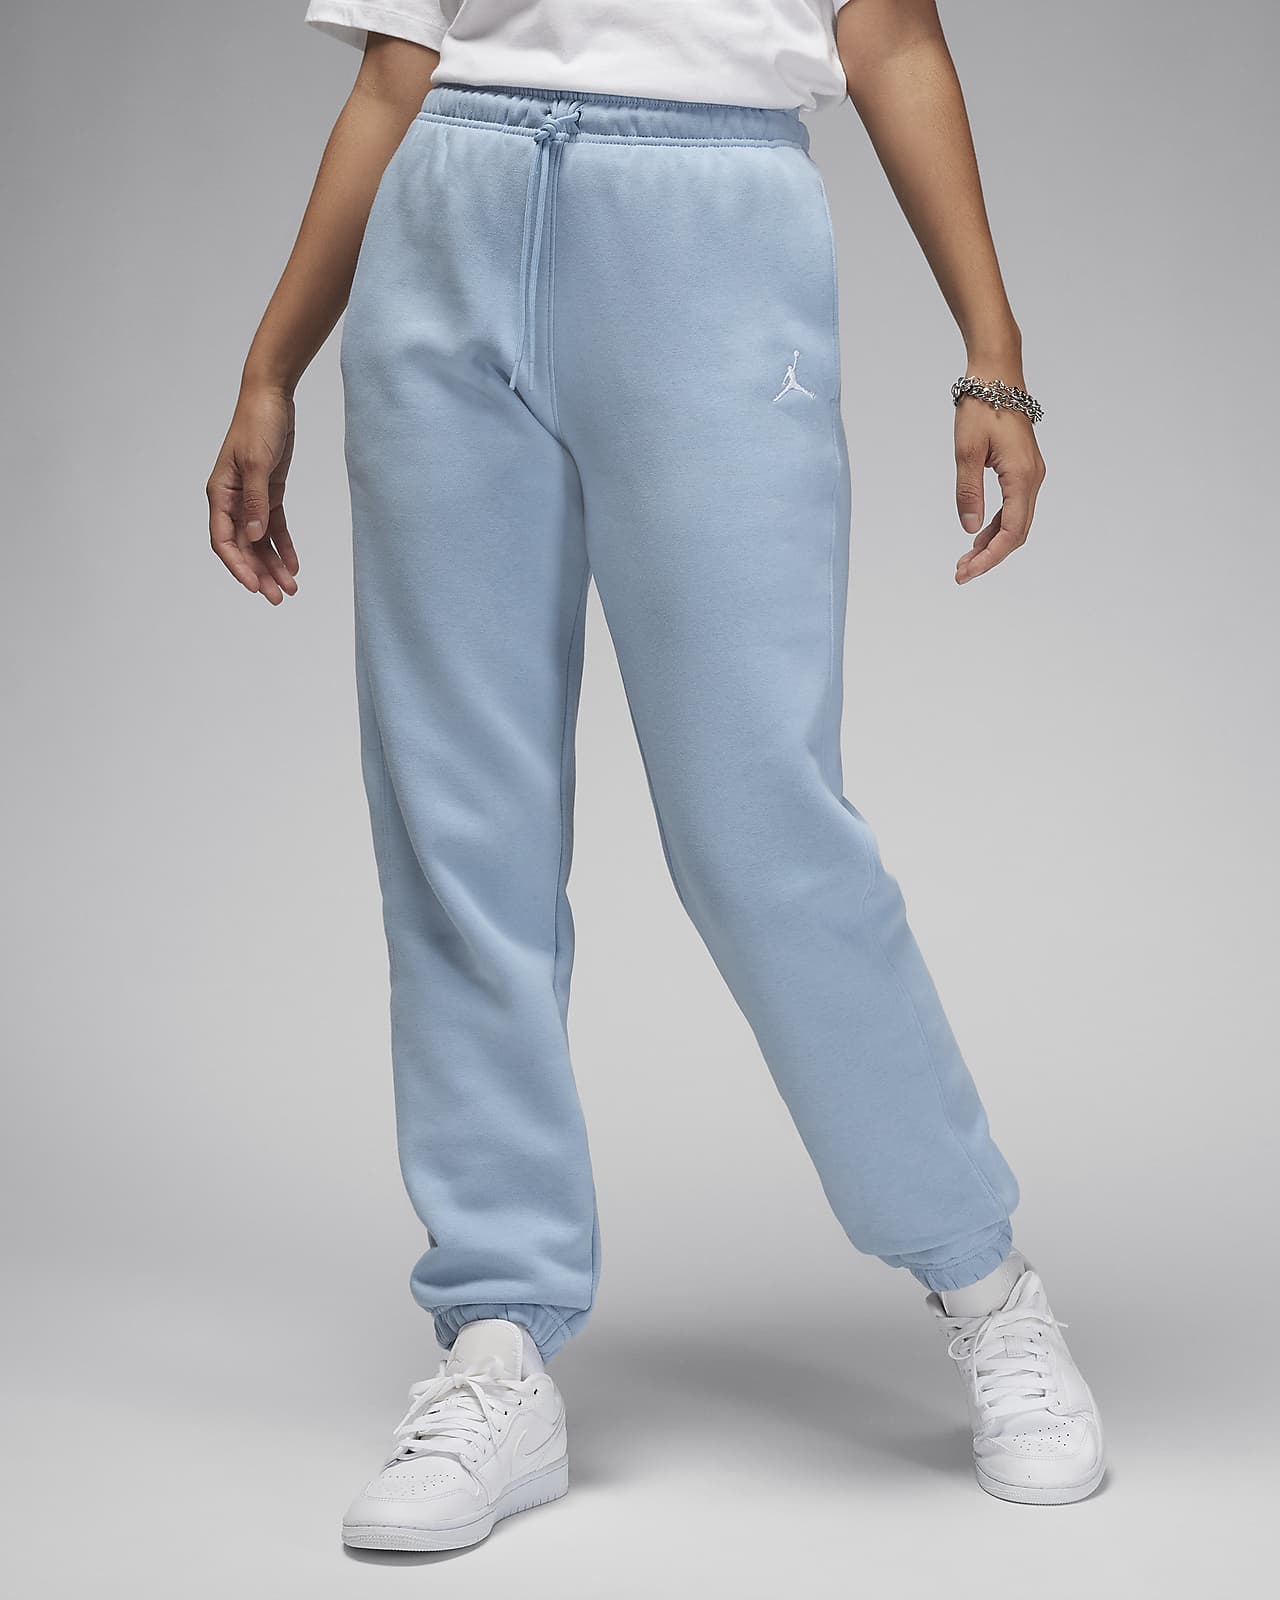 Jordan Brooklyn Fleece Women's Trousers